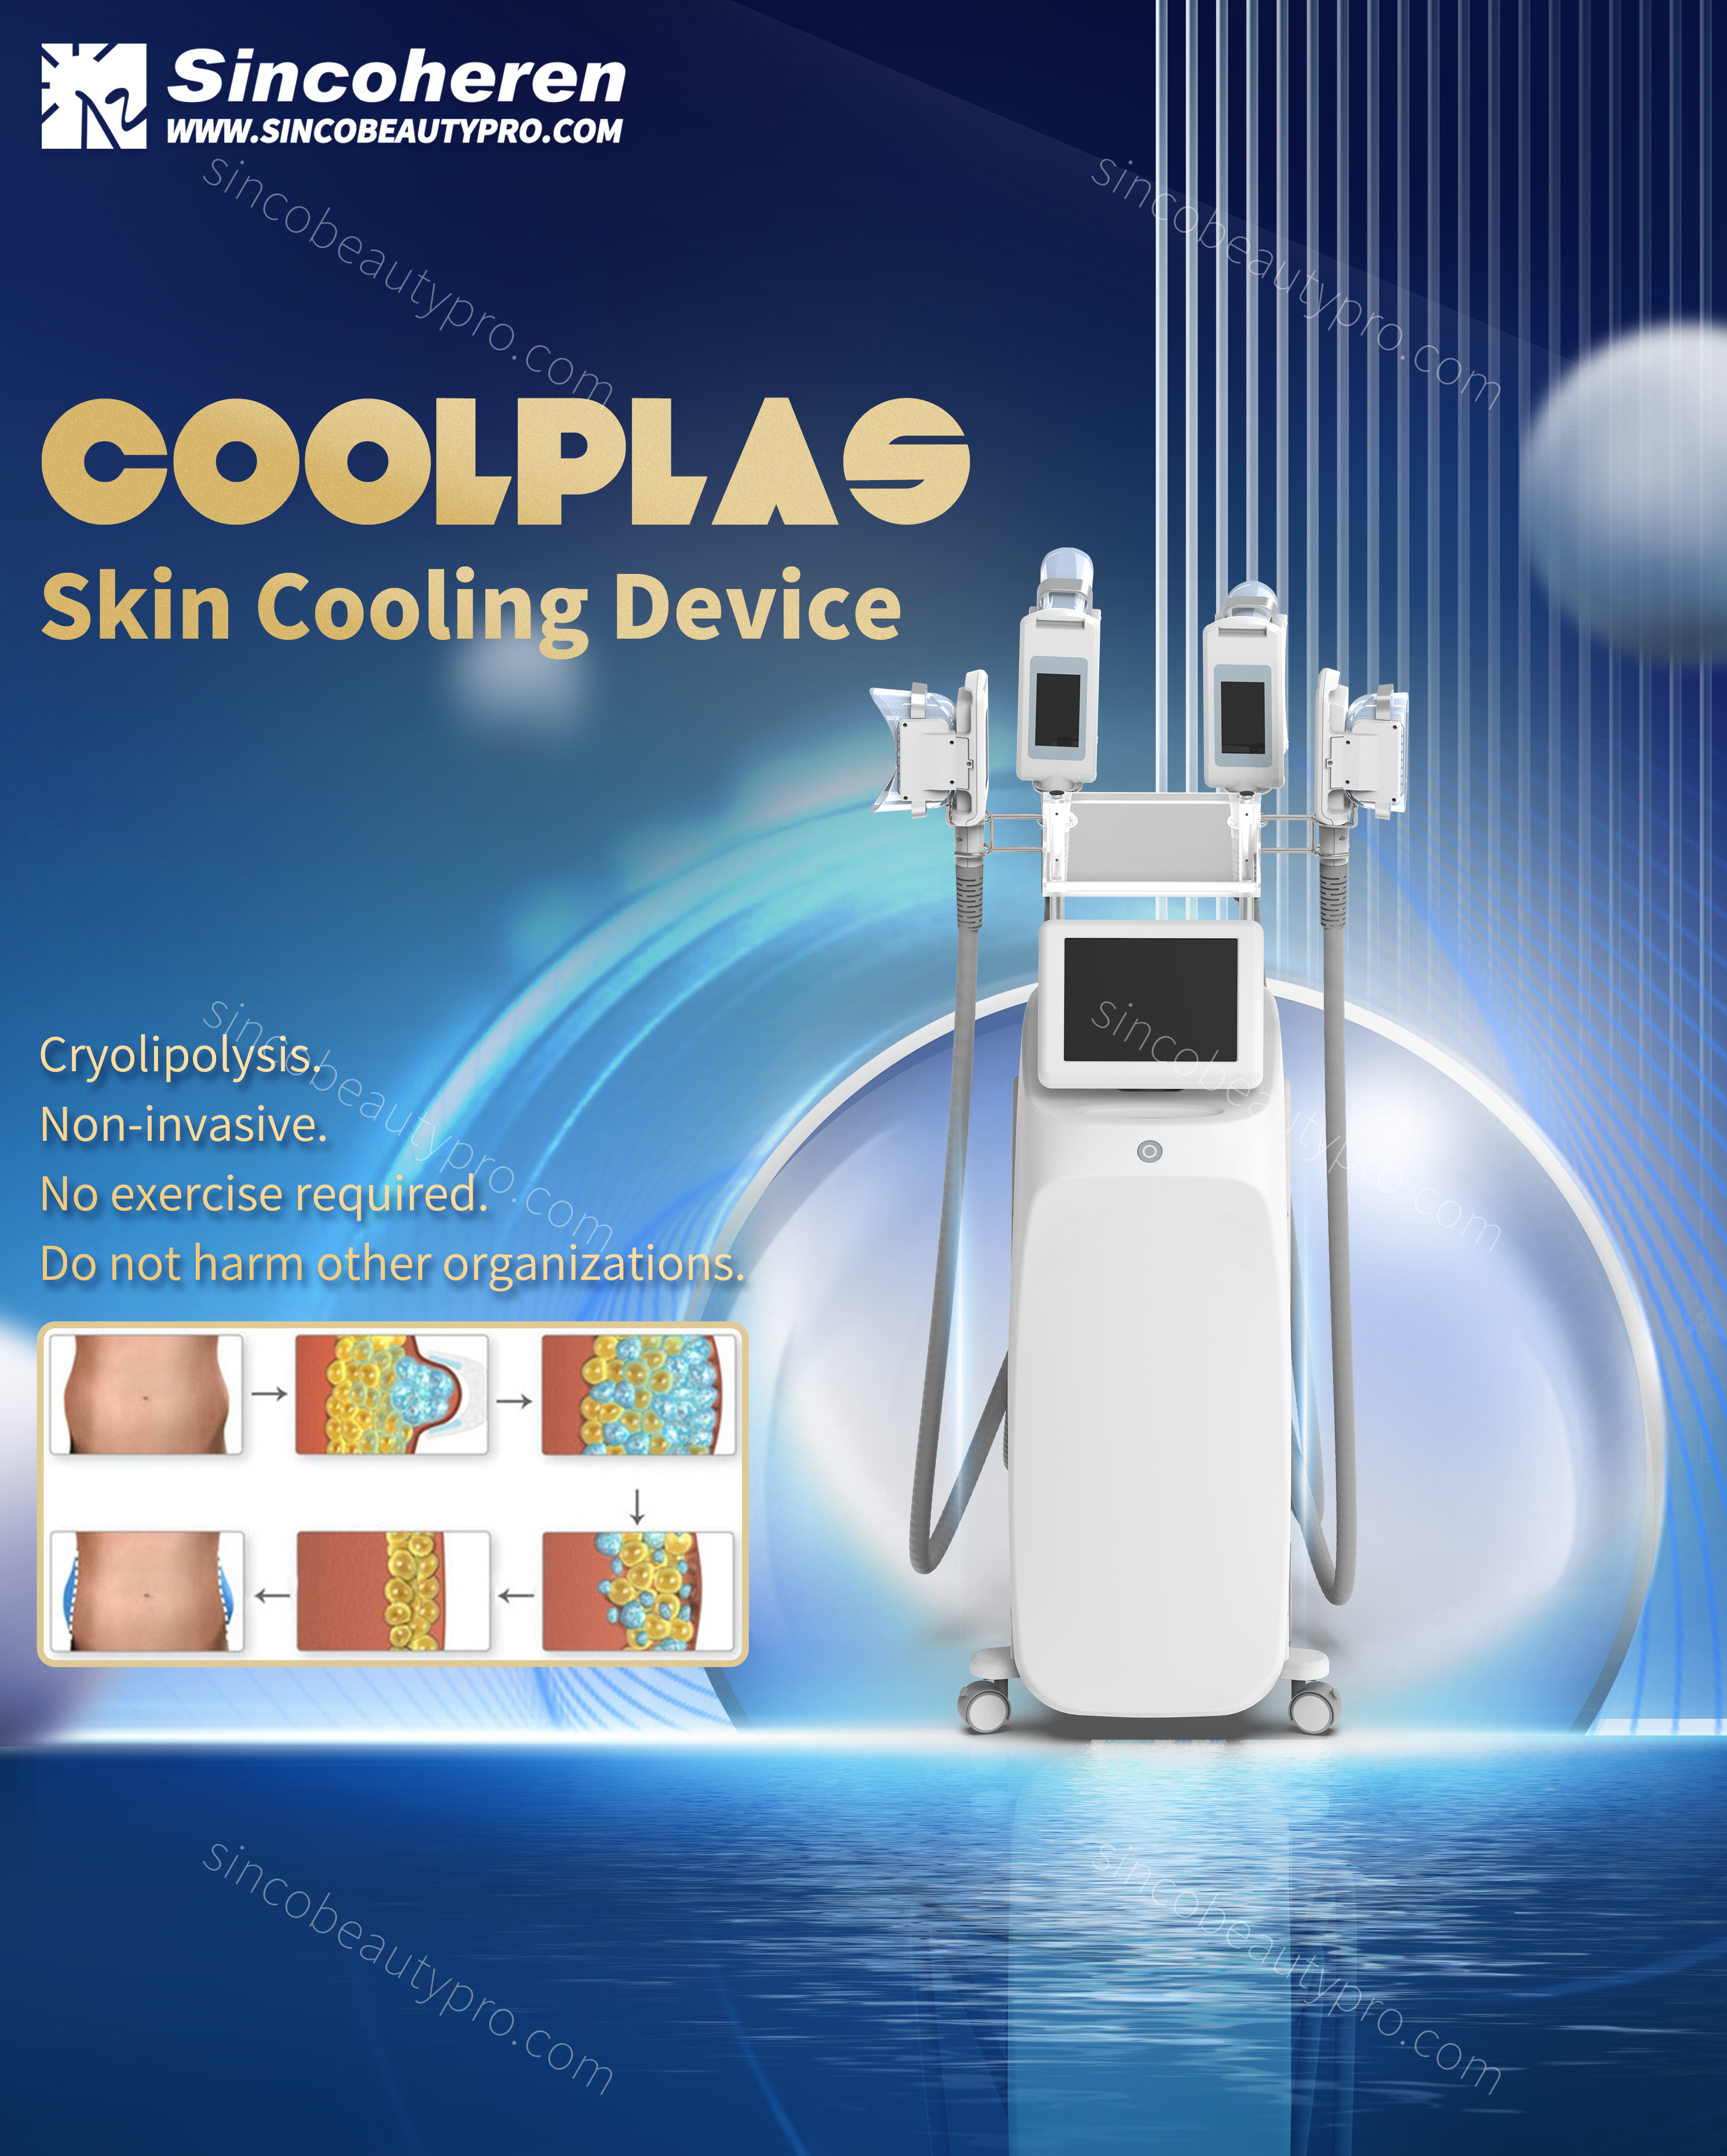 Coolplas Machine 4 Handle-ի նոր մոդելը Առանձին կառավարում Ավելի արդյունավետություն